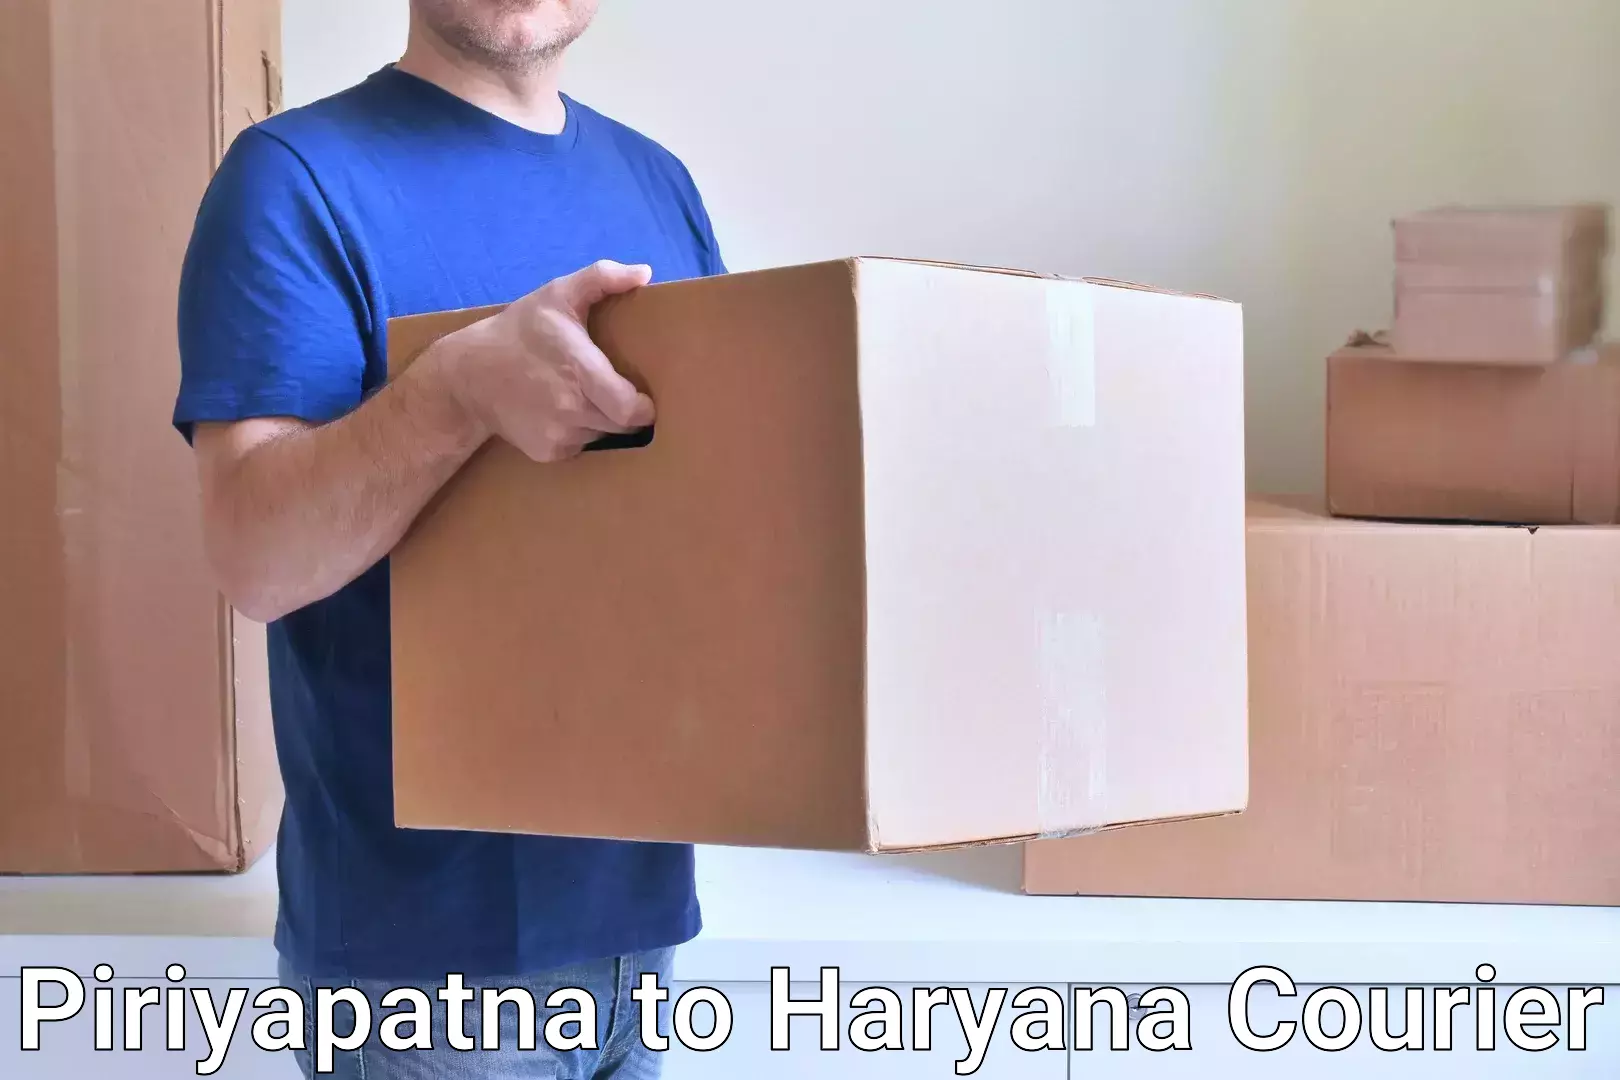 Discounted shipping Piriyapatna to NCR Haryana